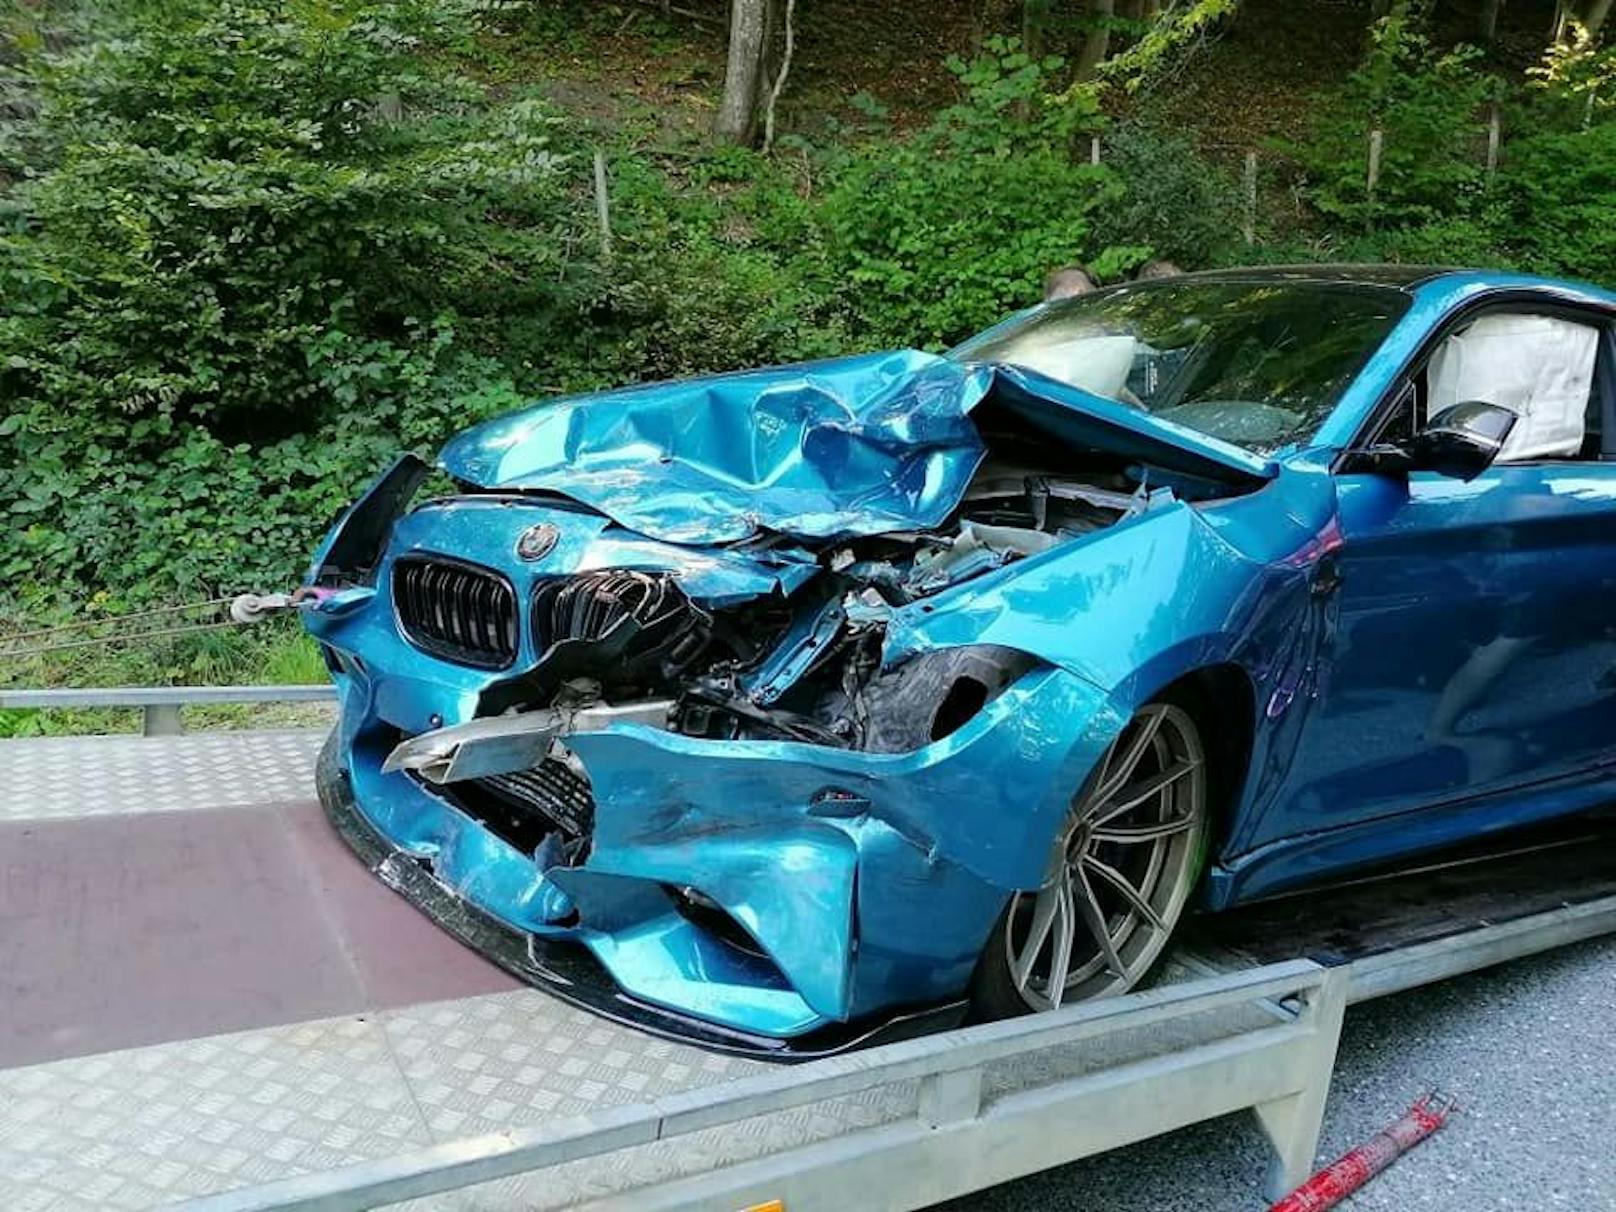 Der Sportwagen wurde schwer beschädigt.